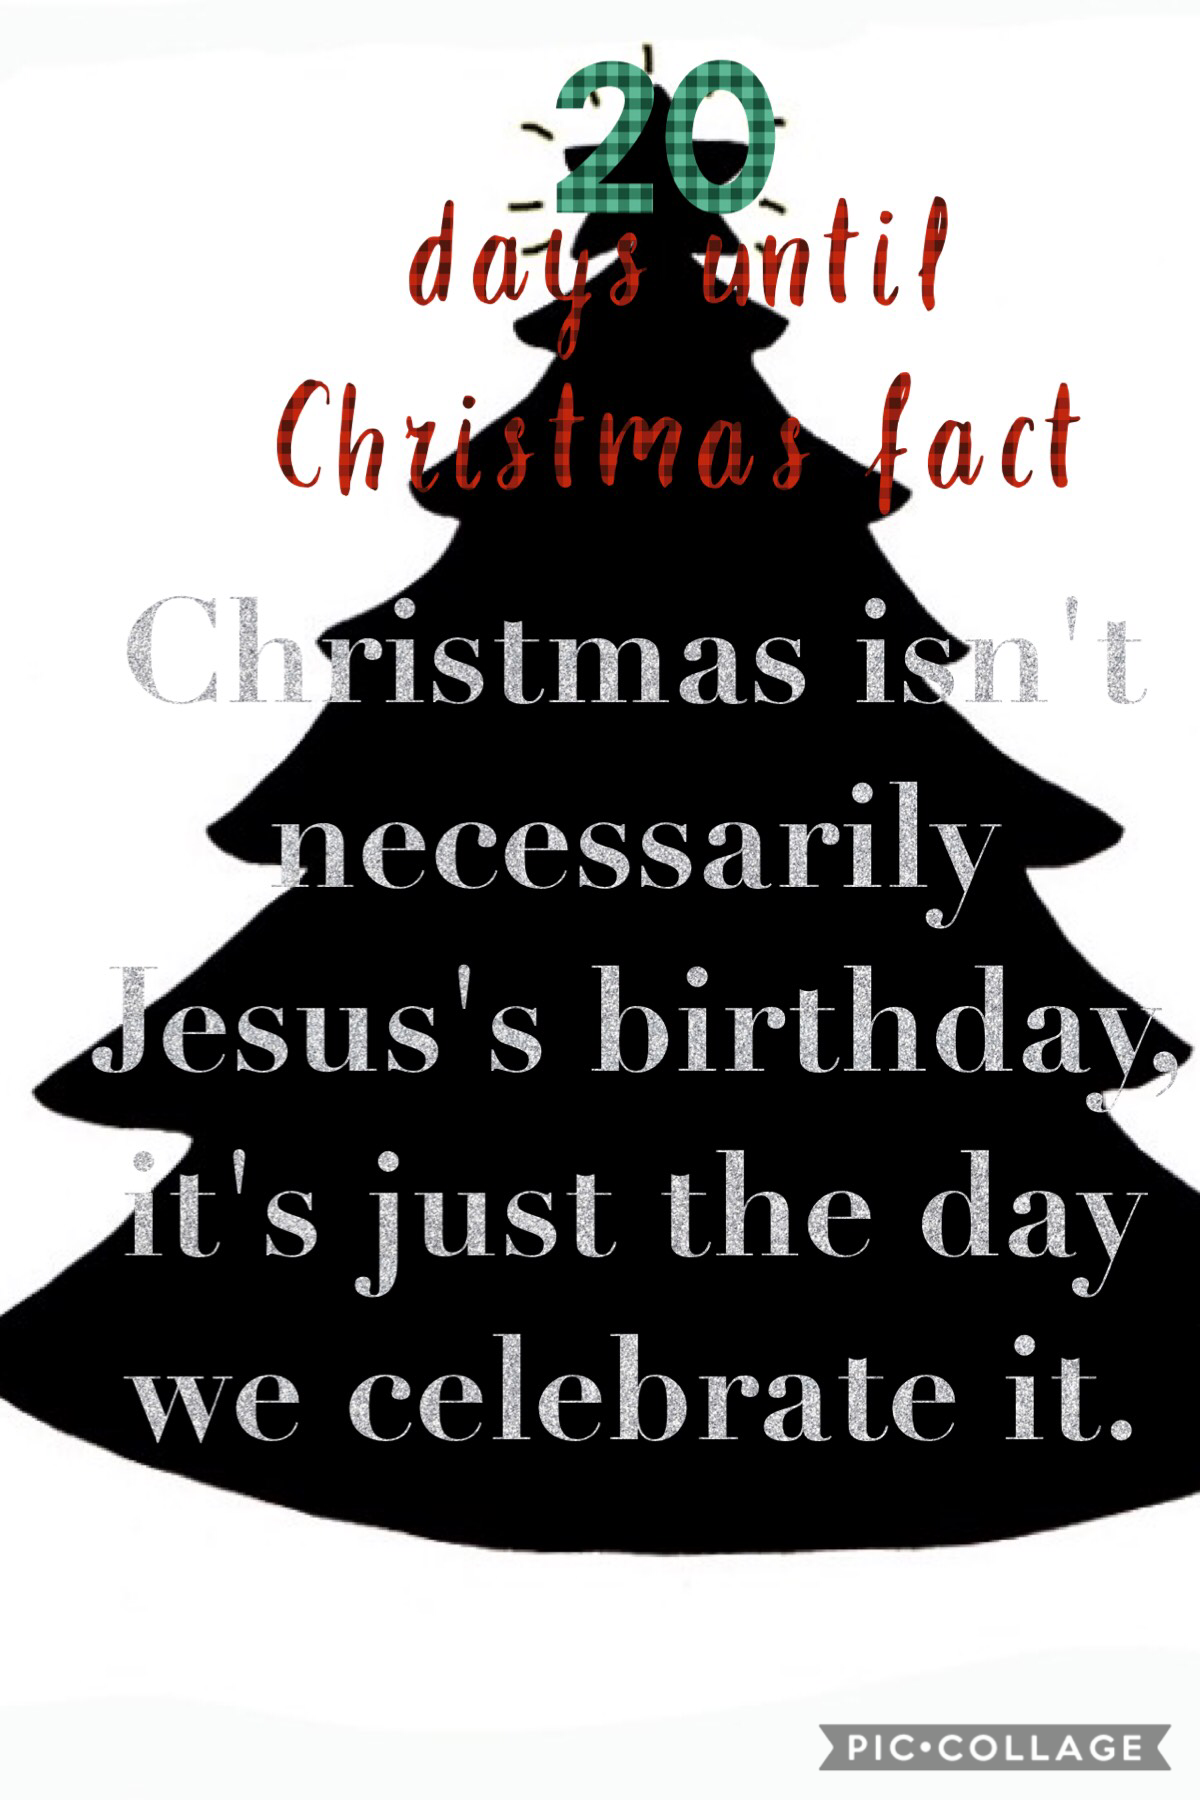 Christmas fact #1